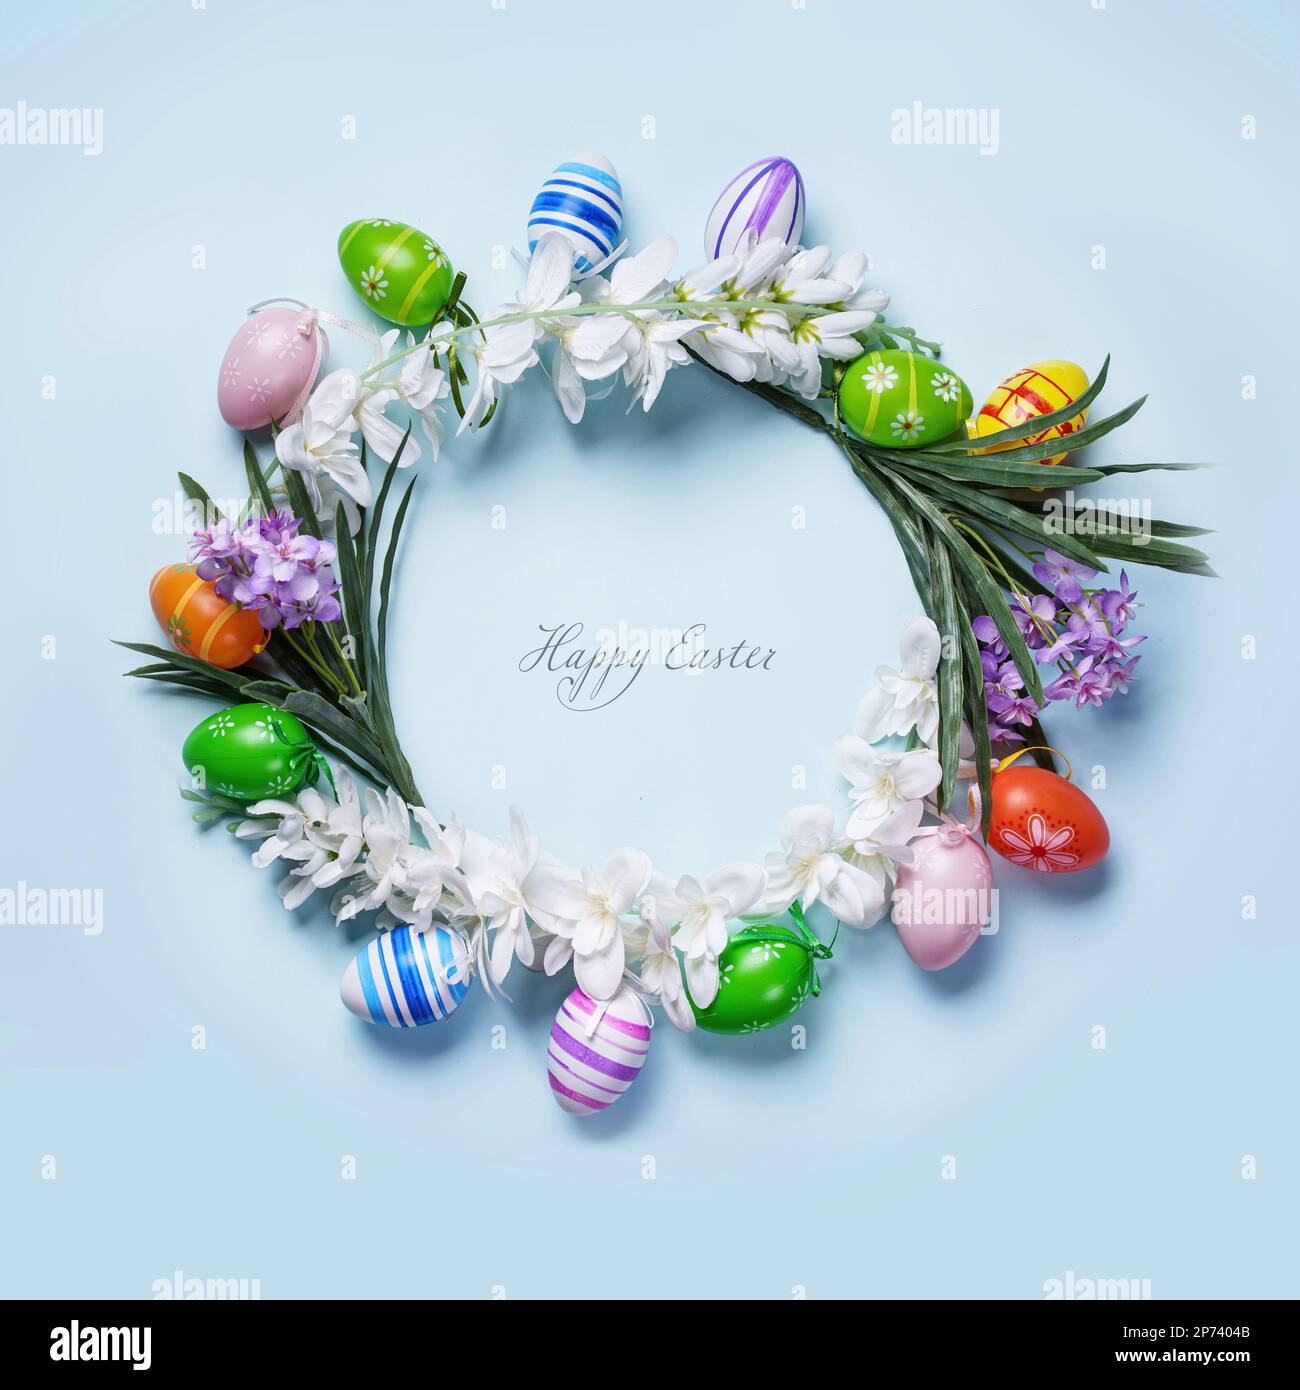 Il biglietto di Pasqua presenta una decorazione floreale circolare con uova colorate su sfondo blu pastello. Il messaggio di 'buona Pasqua' al centro di un cursi Foto Stock